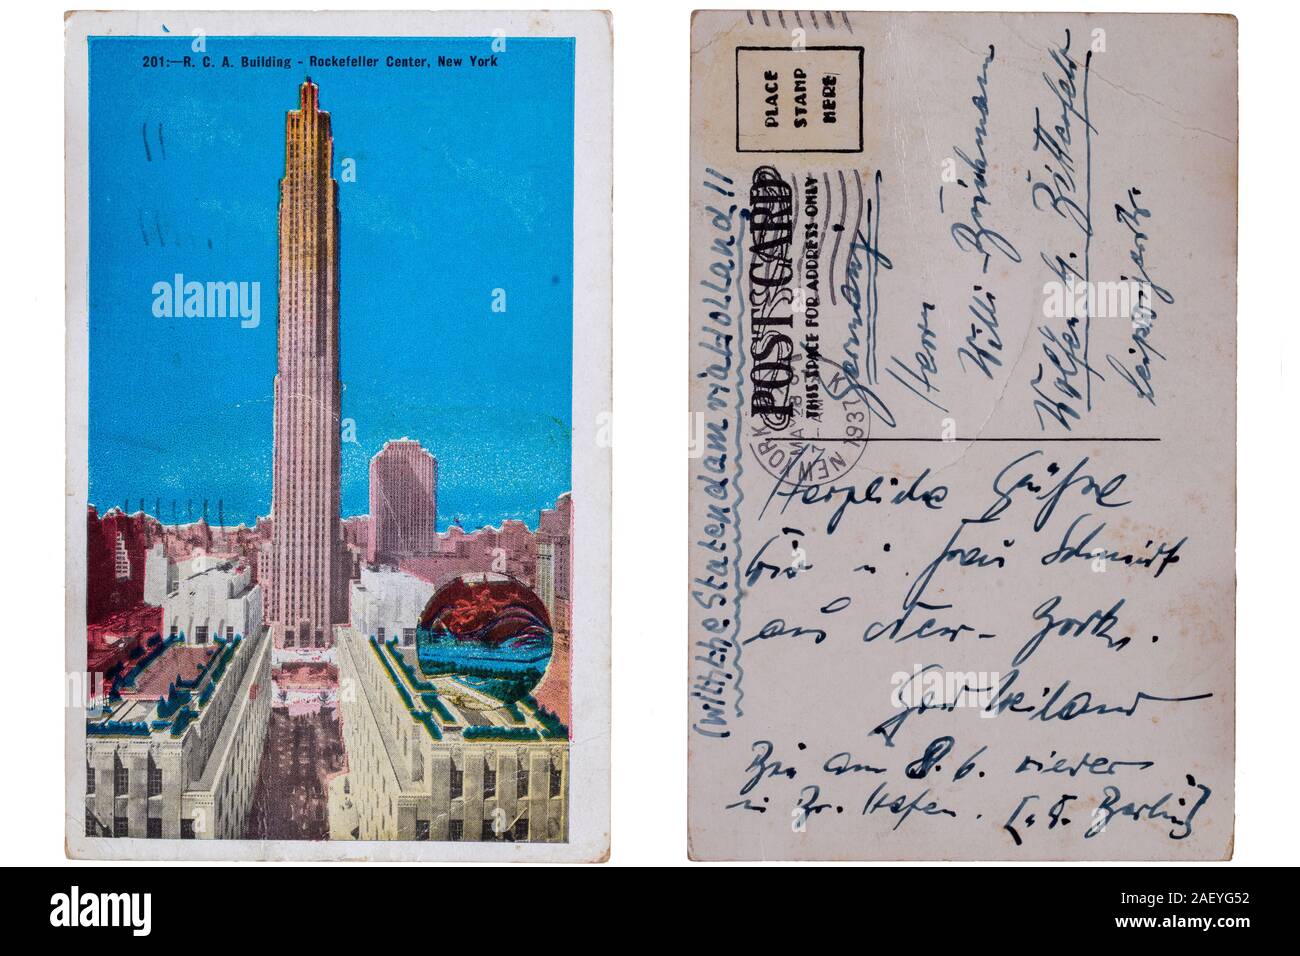 Carte postale vintage. Carte postale colorée de l'A.R.C. Bâtiment, Rockefeller Center, New York à partir de 1937, qui a été envoyé avec le Statendam (regarder en arrière si Banque D'Images